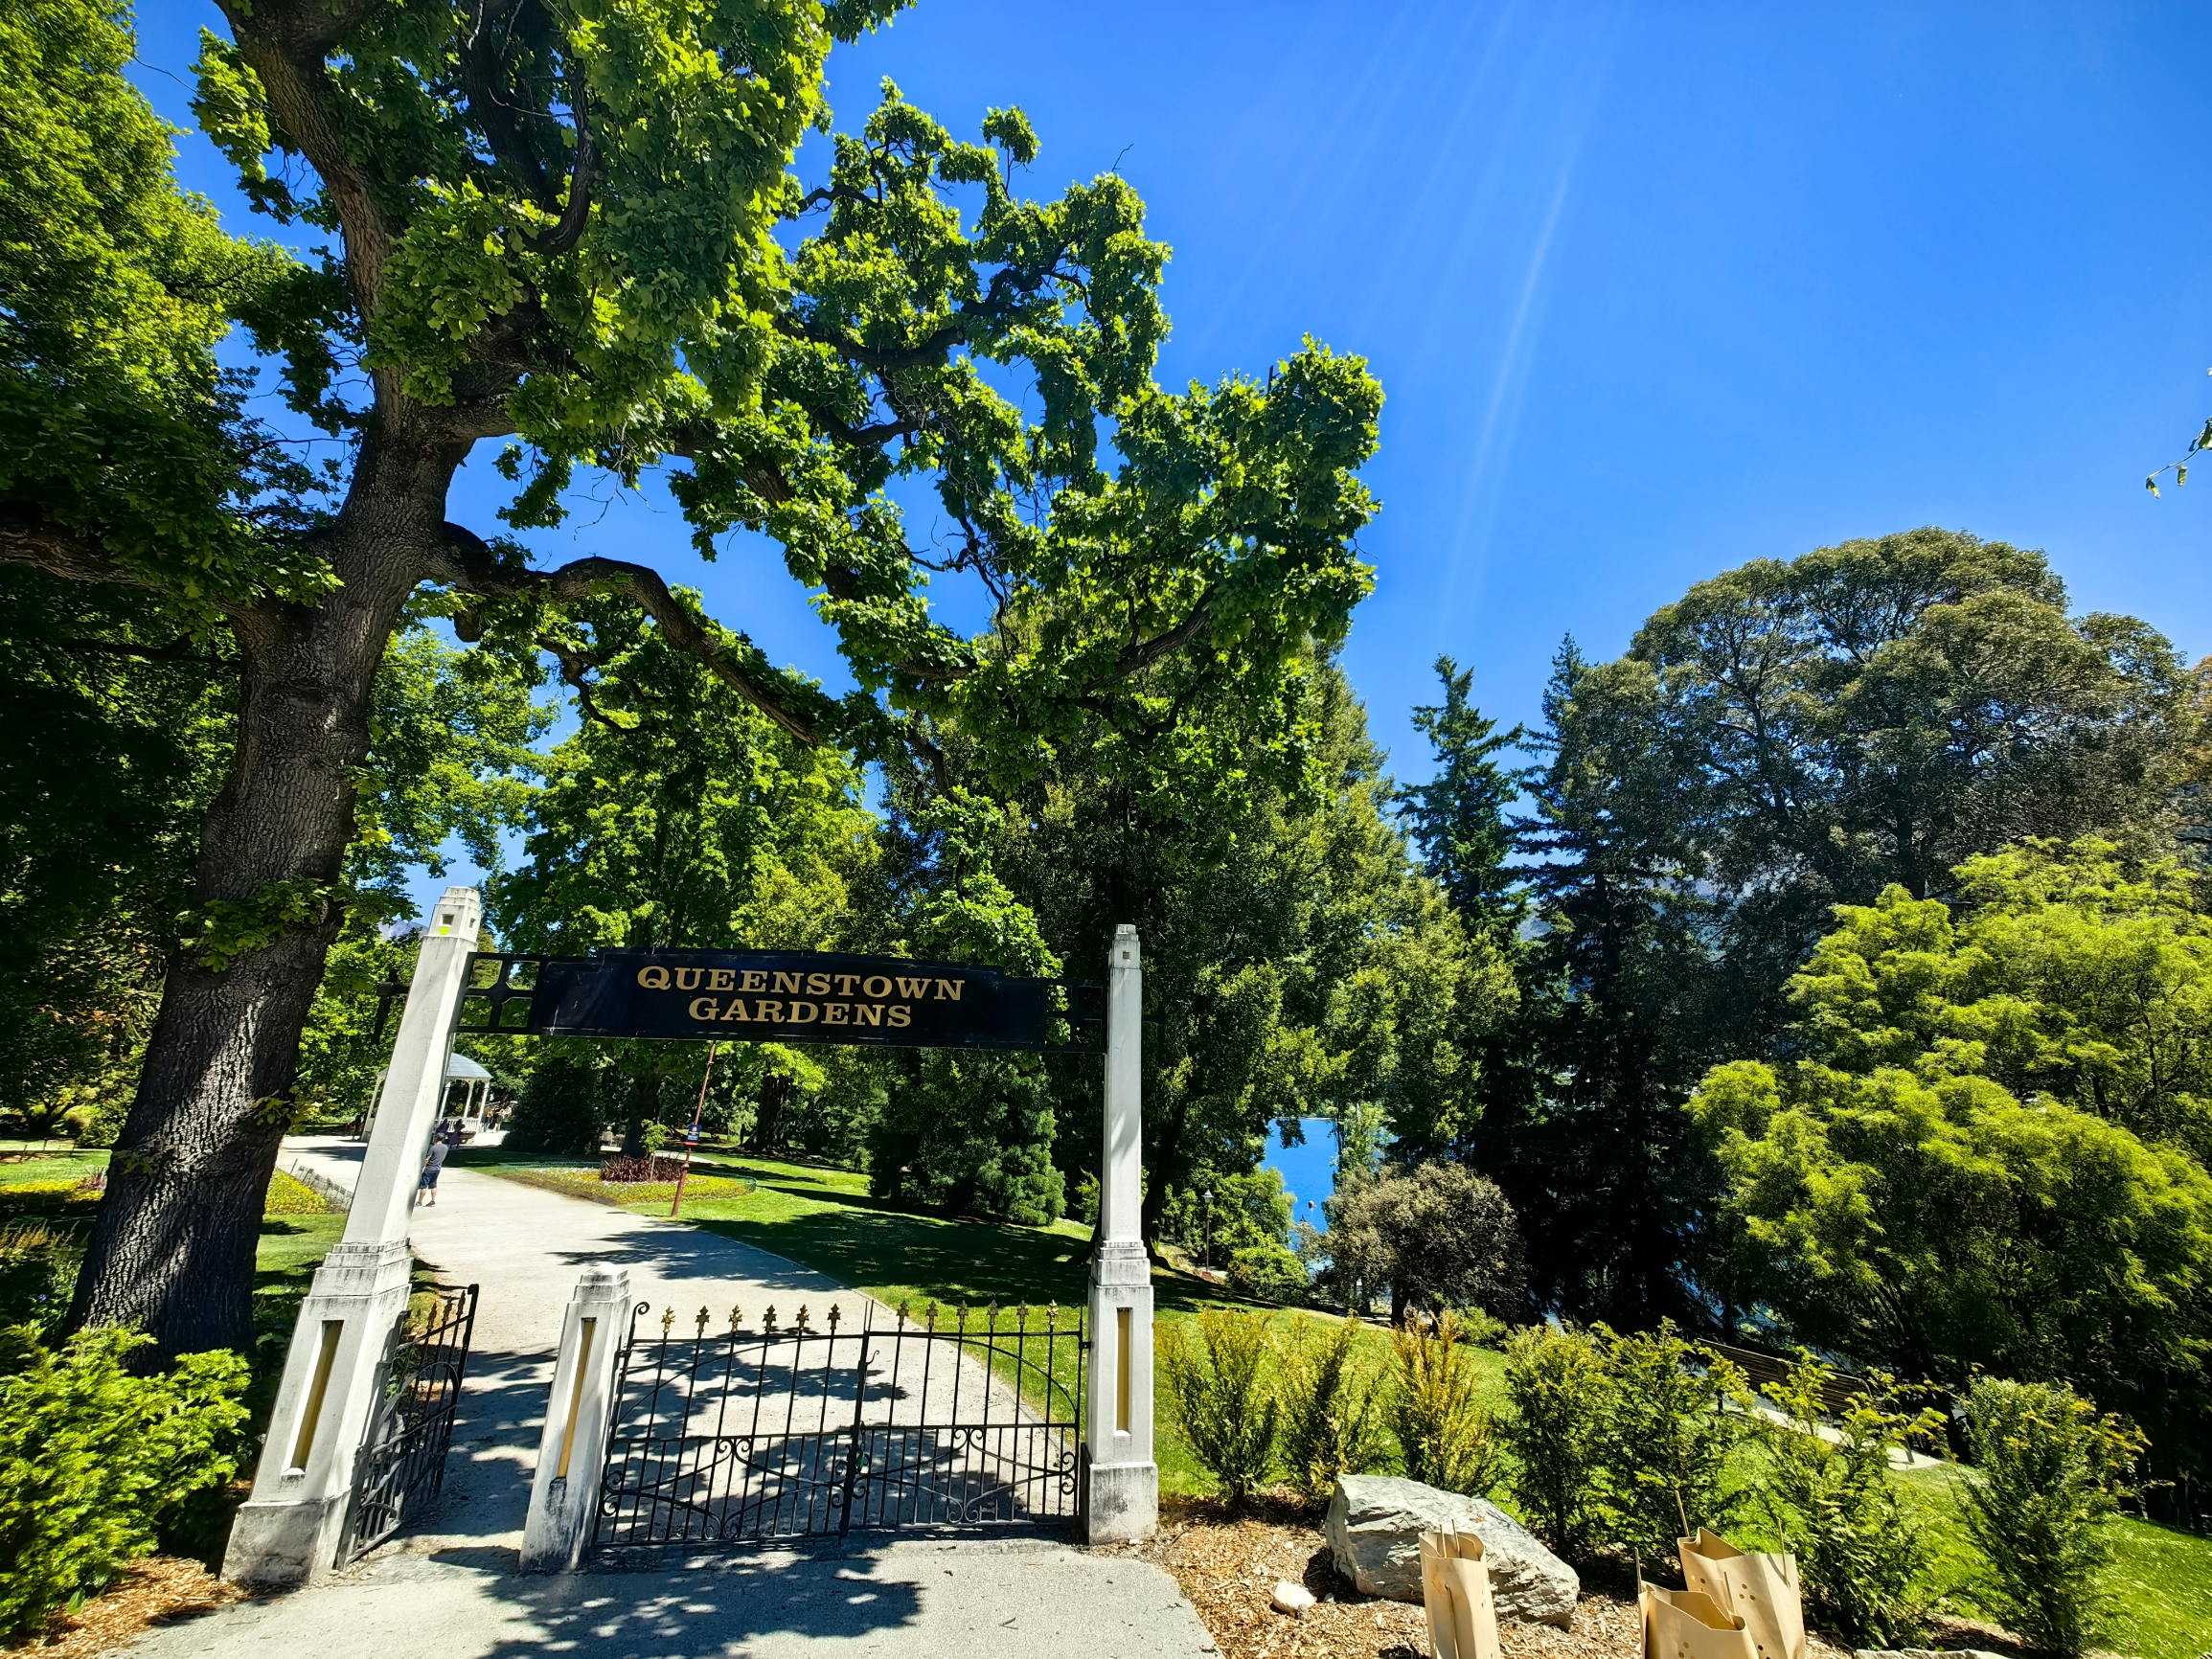 皇后镇花园位于新西兰南岛西南角的皇后镇中心。是世界著名的旅游胜地之一。皇后镇花园完全免费开放。人们在